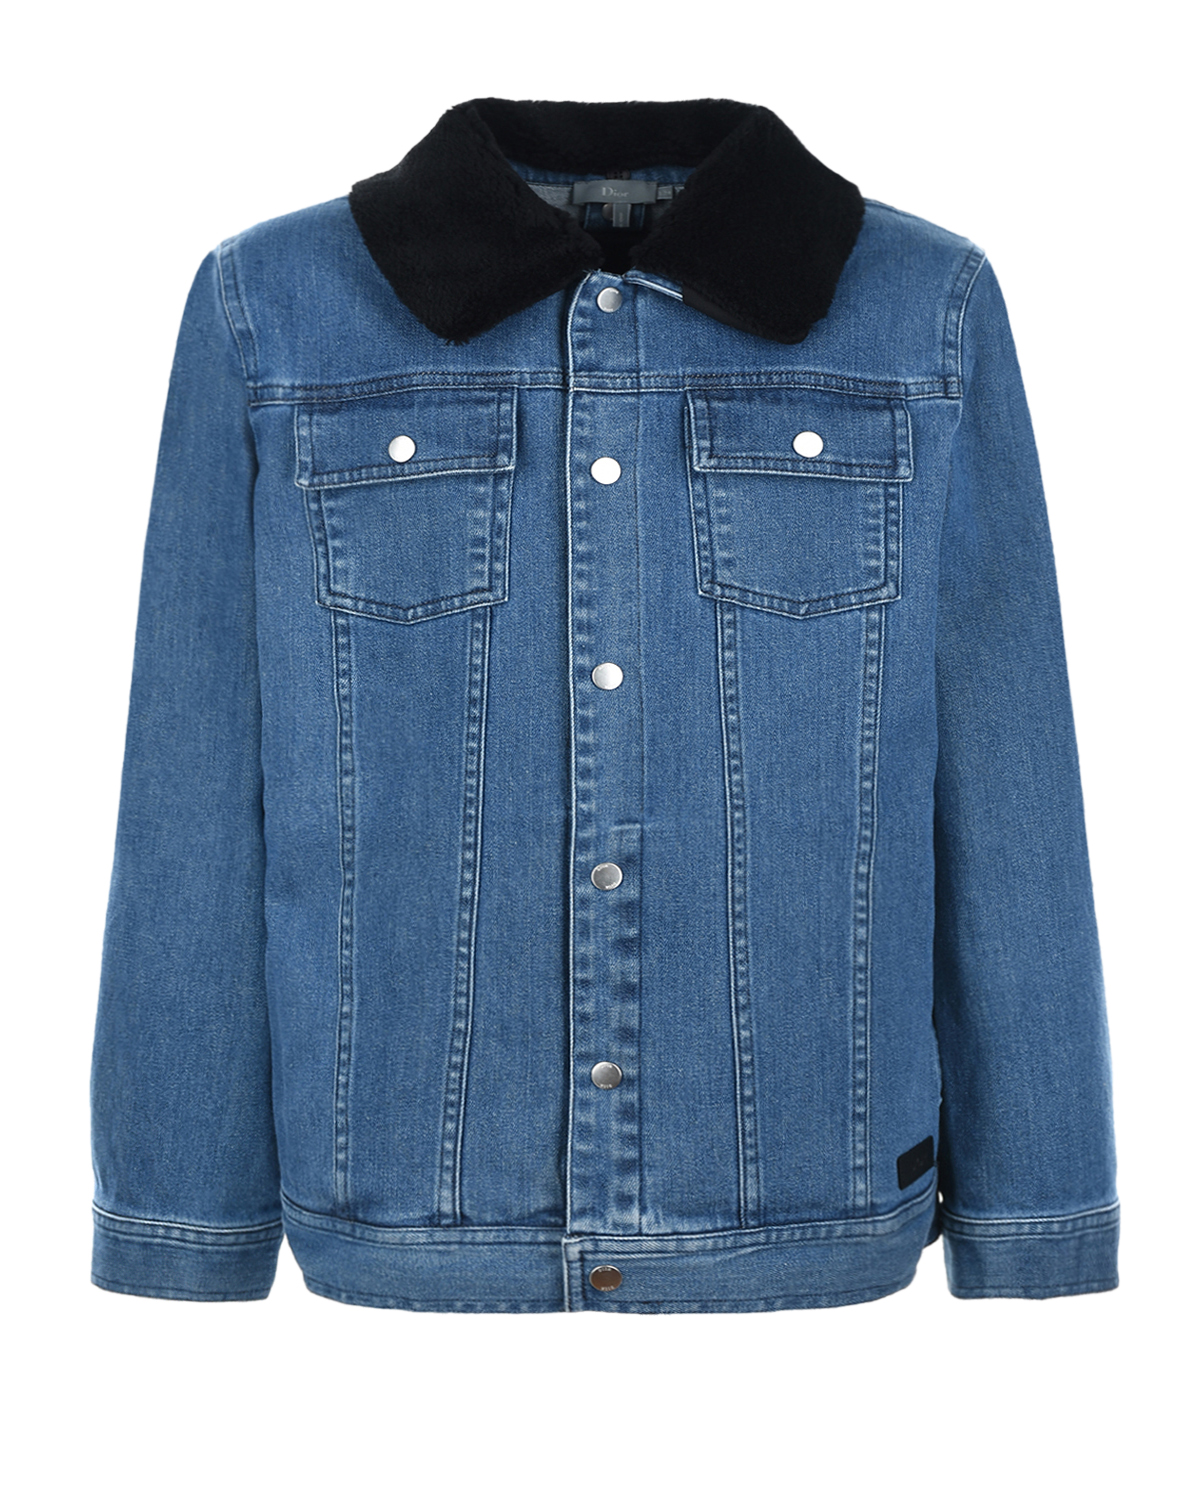 Джинсовая куртка с меховым воротником и подкладкой Dior детская, размер 158, цвет синий